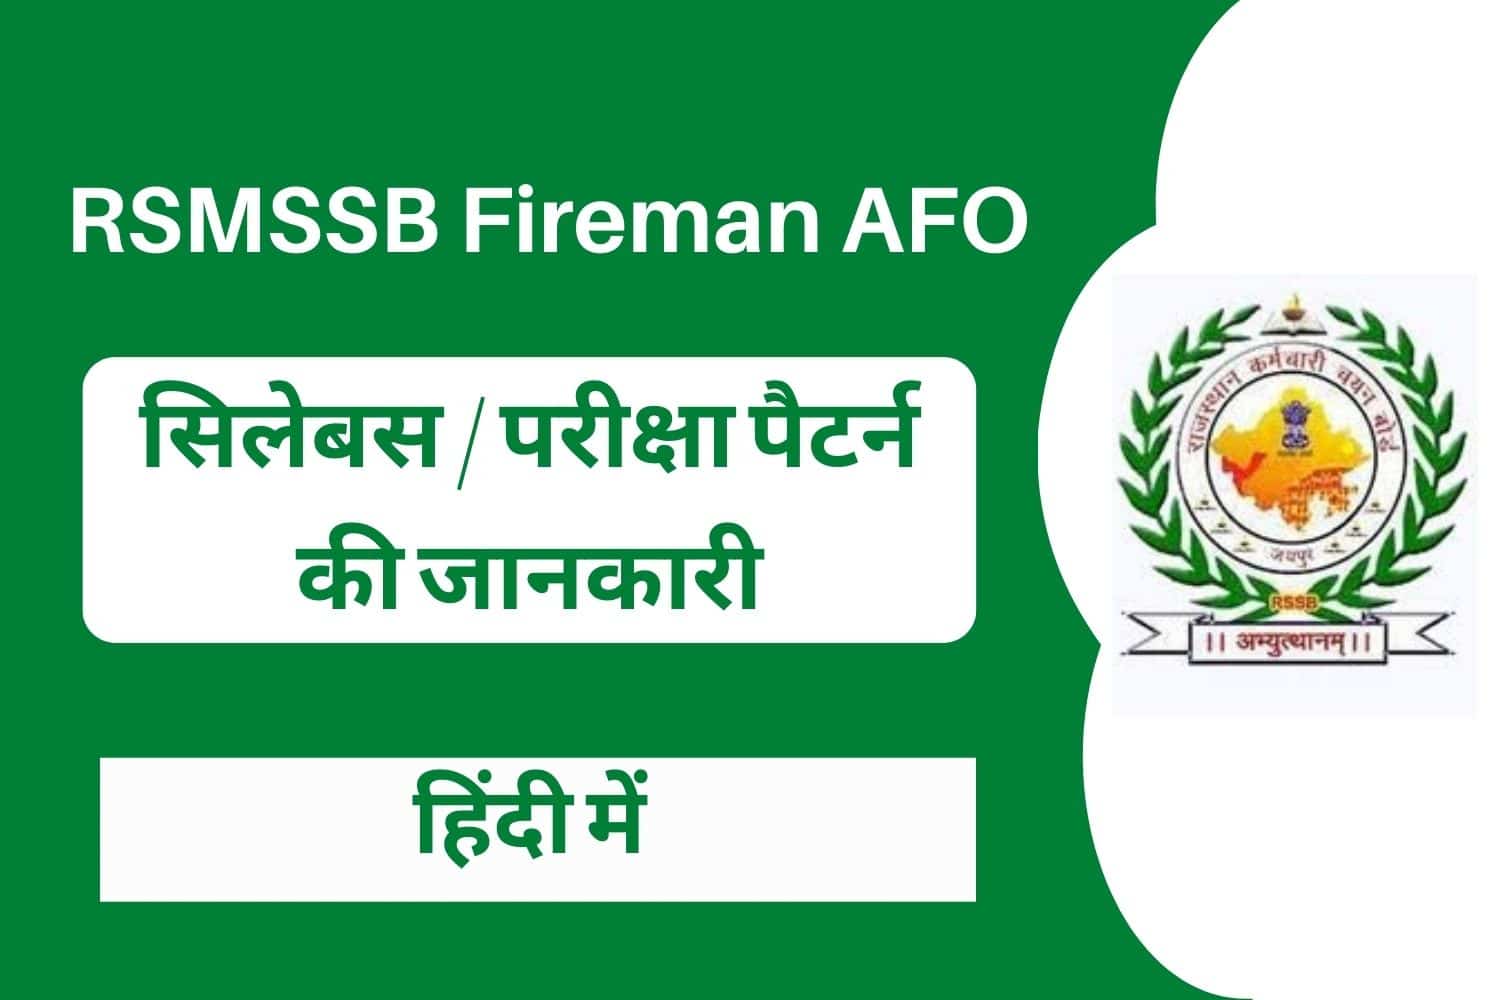 Rajasthan RSMSSB Fireman AFO Syllabus In Hindi | राजस्थान फायरमैन सिलेबस हिंदी में